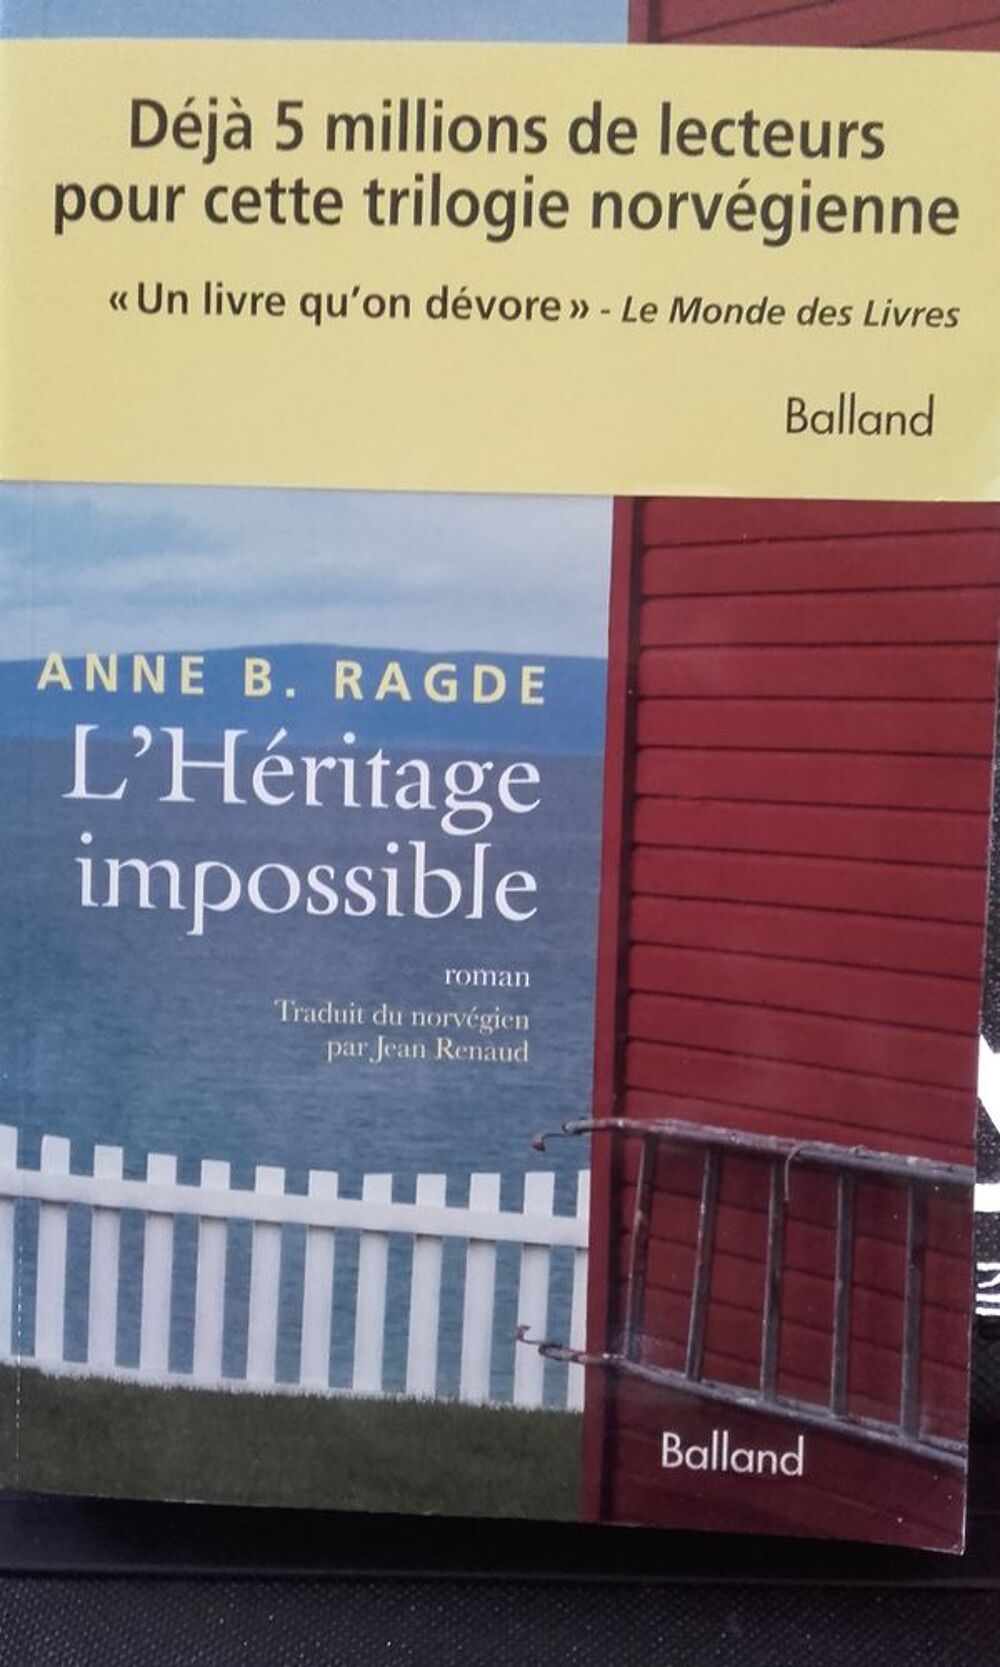 Livre de Anne B.RAGDE Livres et BD